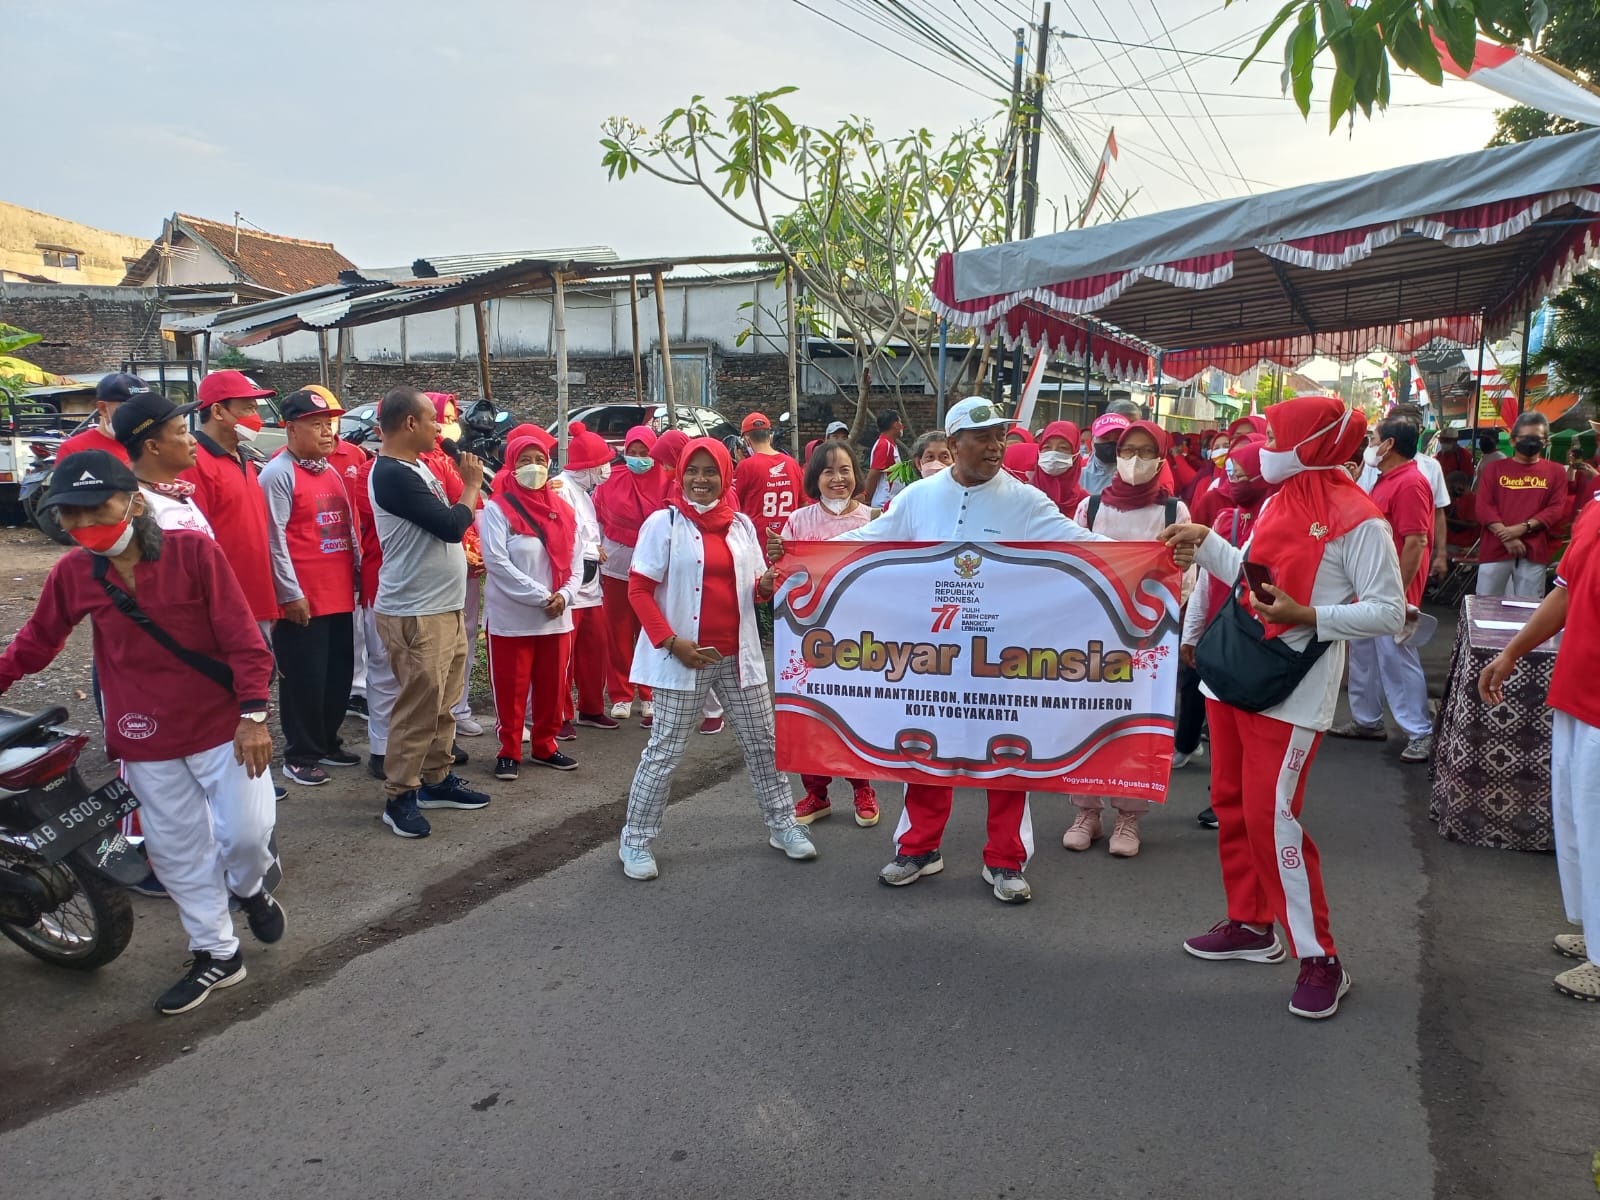 Nuasa Merah Putih Semarakan Gebyar Lansia di Kelurahan Mantrijeron